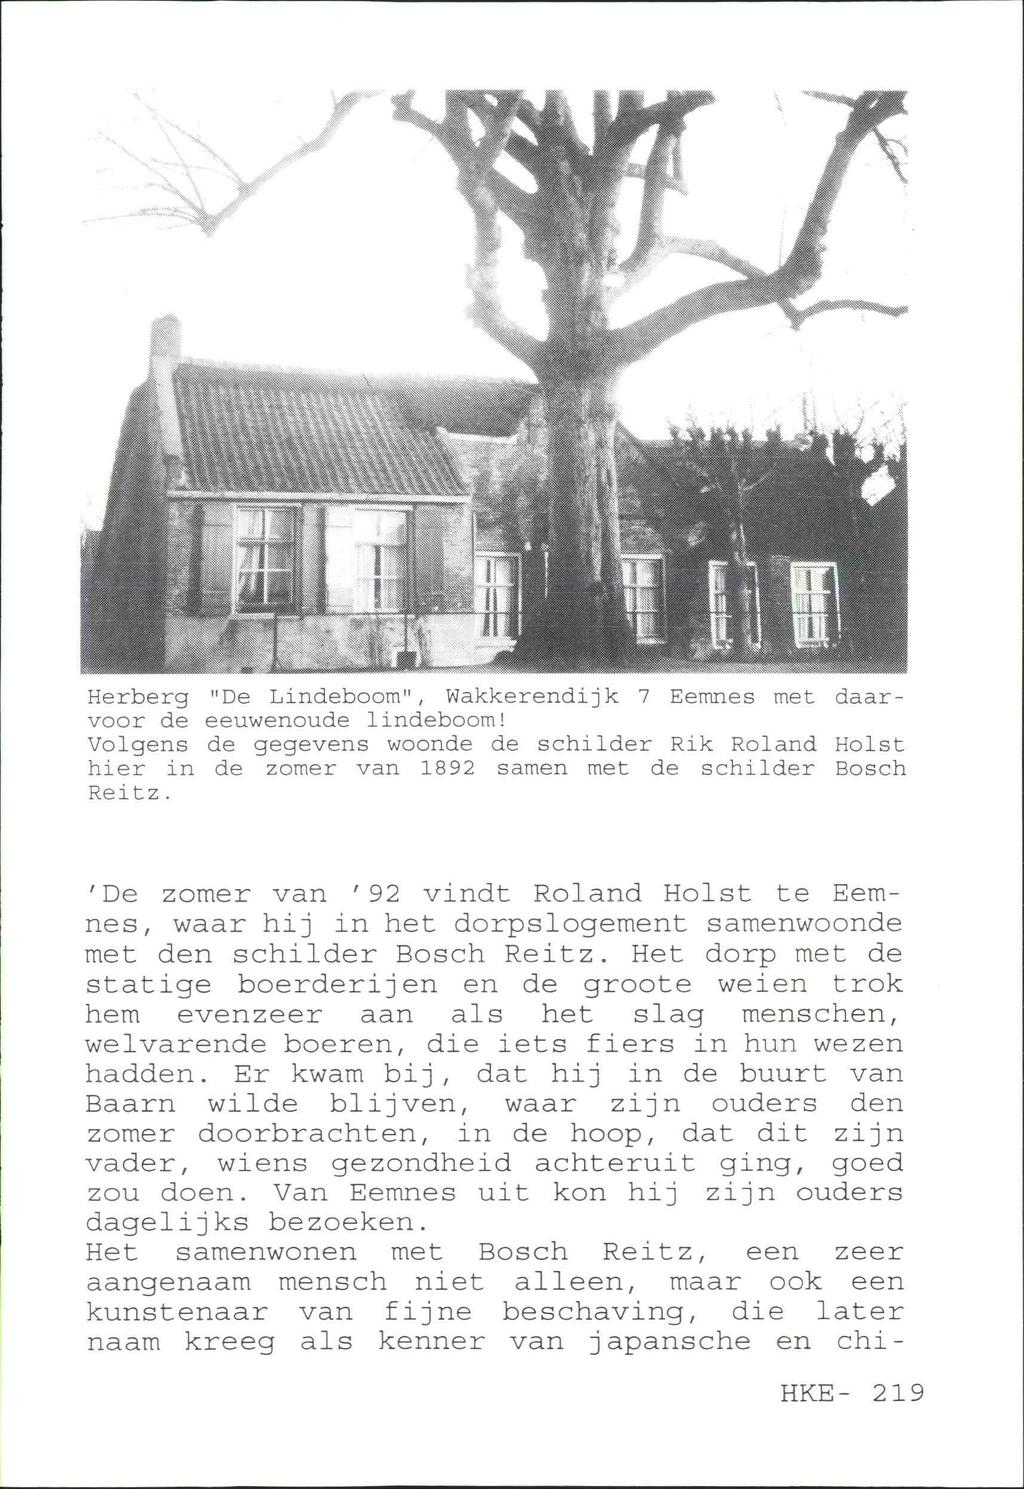 Herberg "De Lindeboom", Wakkerendijk 7 Eemnes met daarvoor de eeuwenoude lindeboom! Volgens de gegevens woonde de schilder Rik Roland Holst hier in de zomer van 1892 samen met de schilder Bosch Reitz.